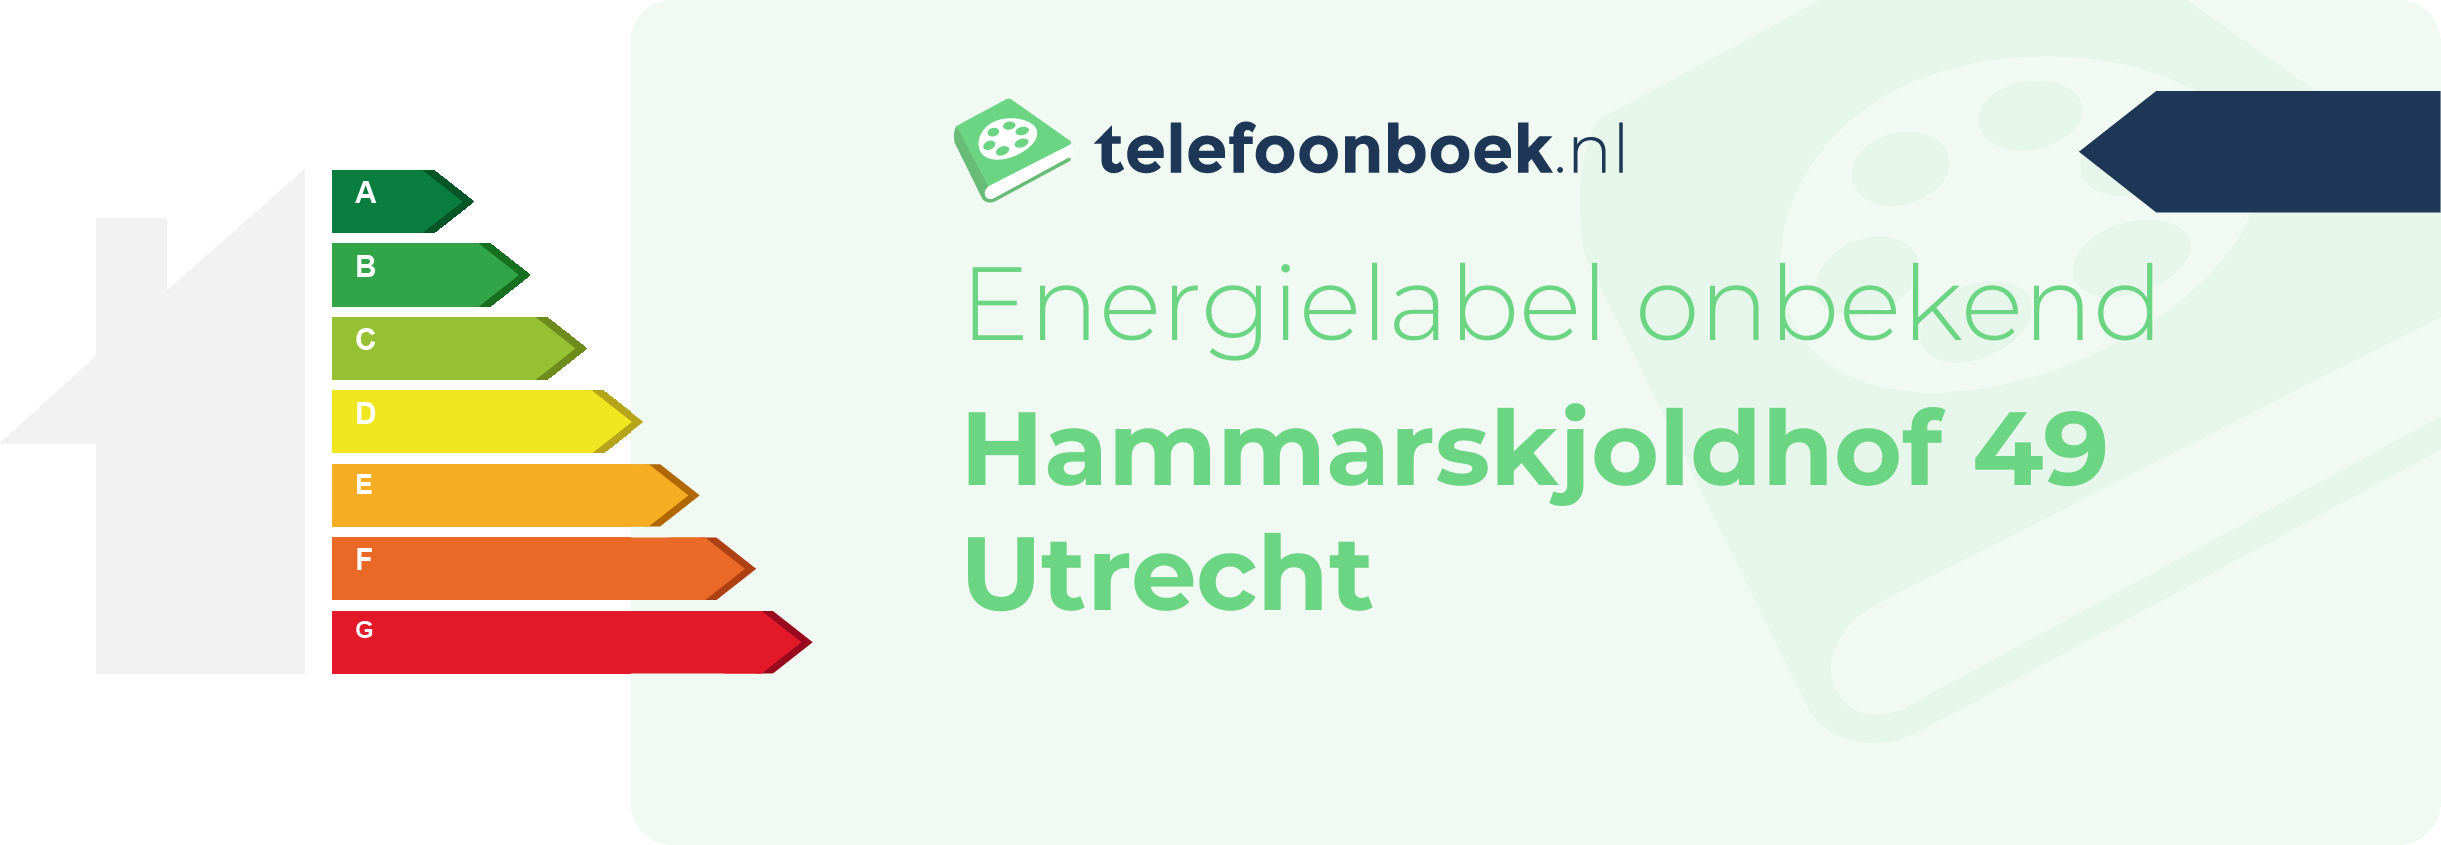 Energielabel Hammarskjoldhof 49 Utrecht